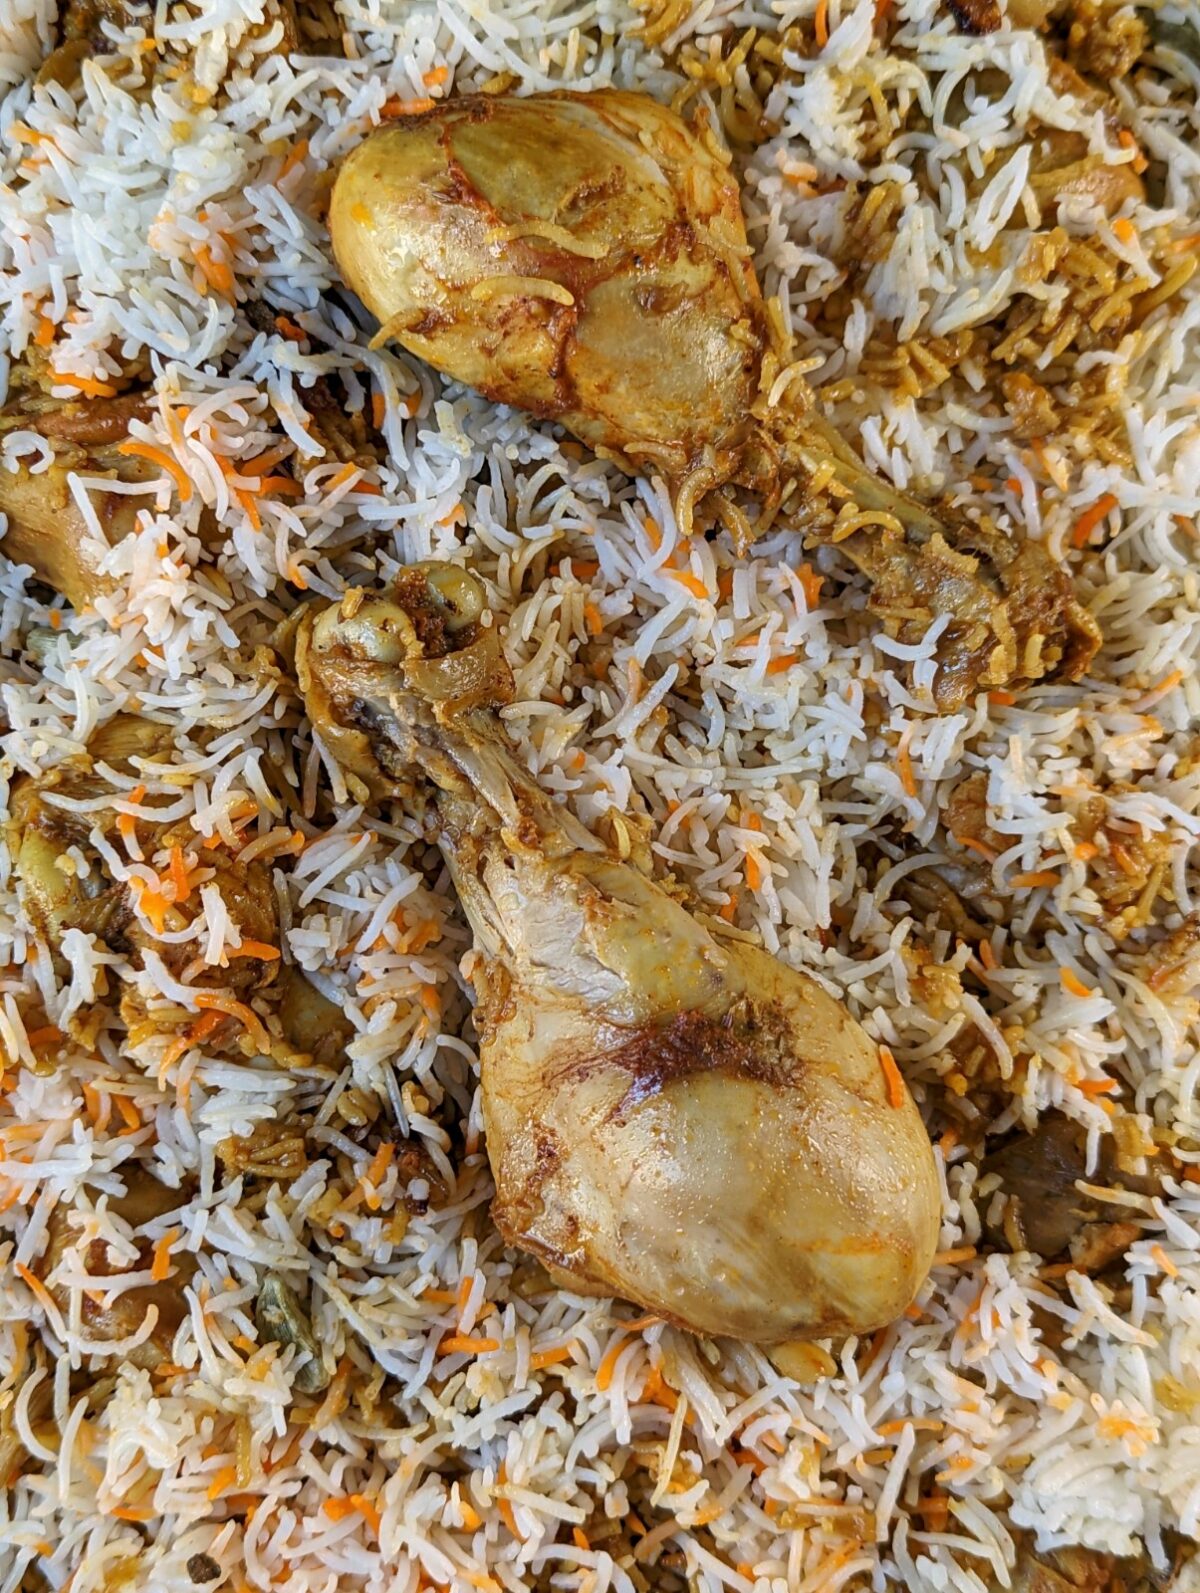 Chicken biryani in a serving dish.